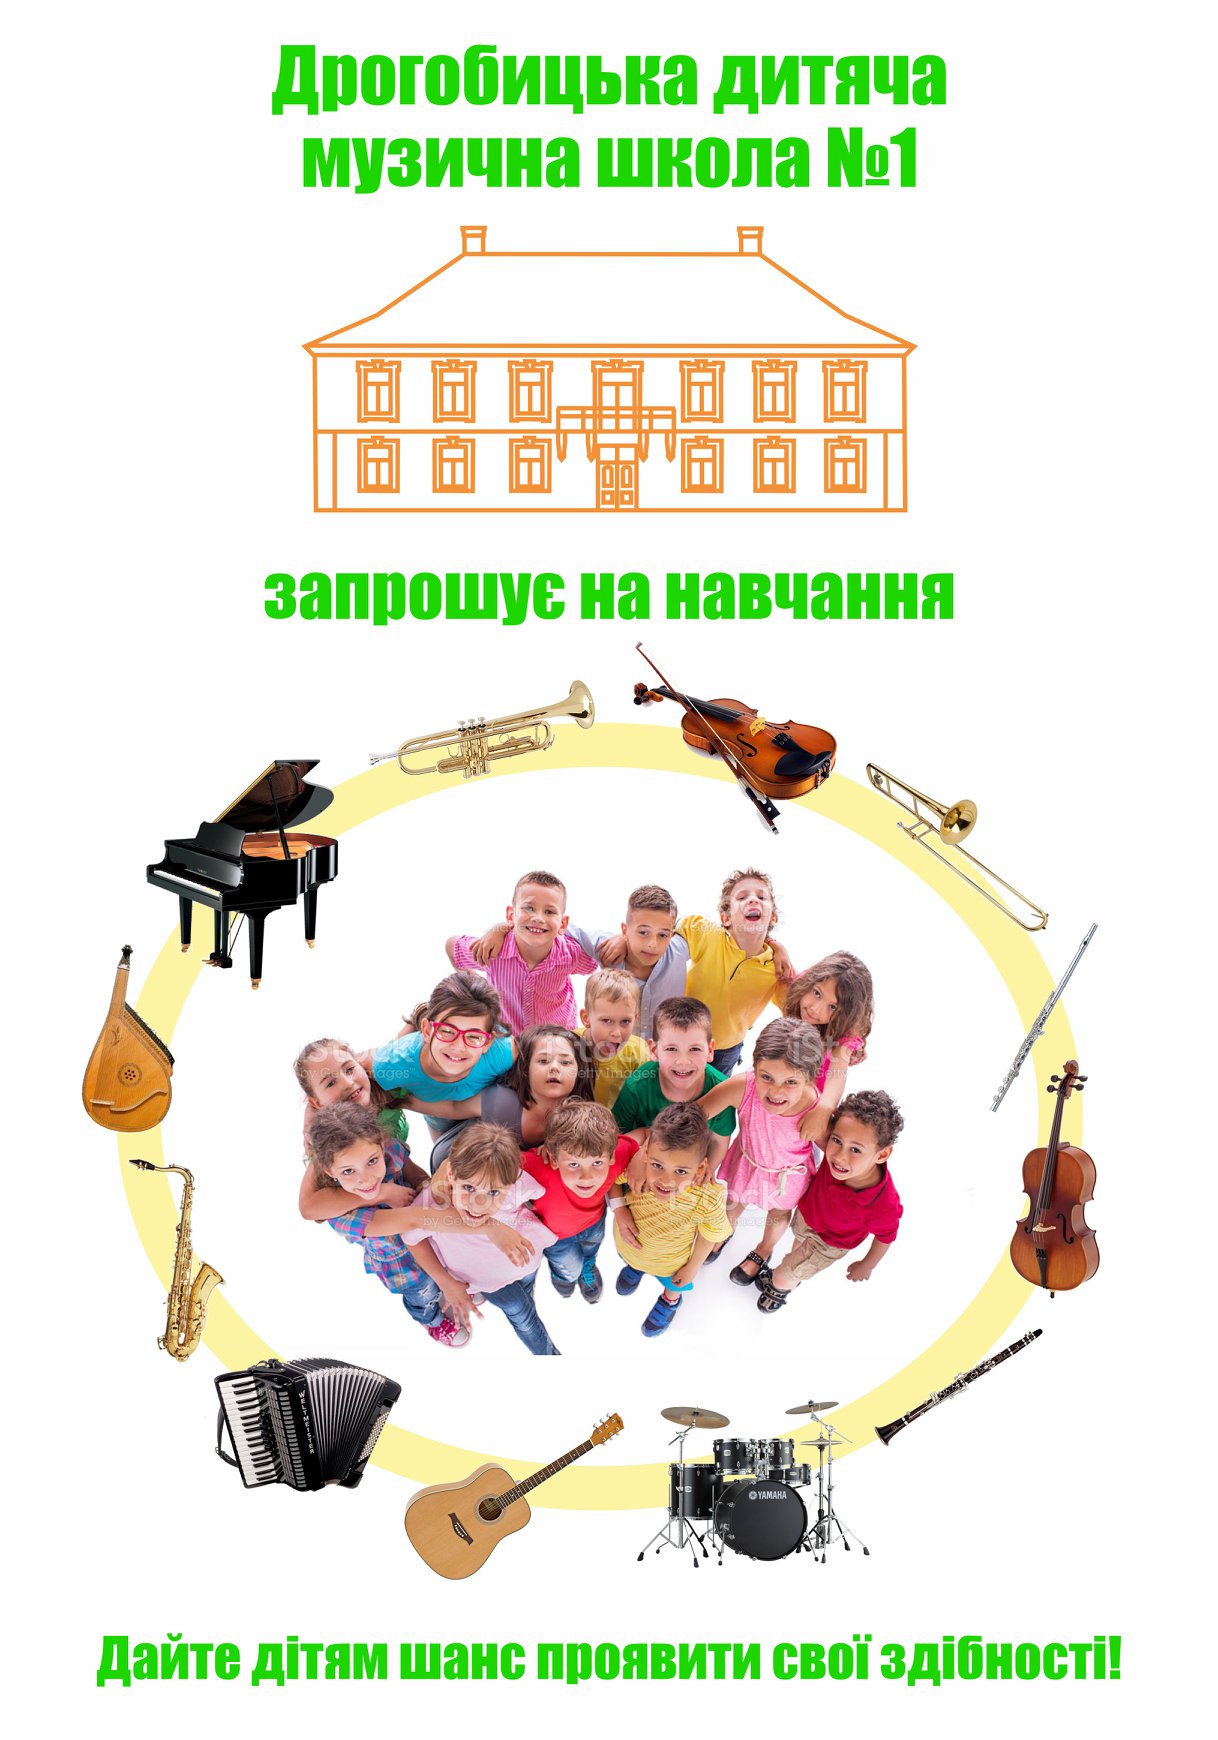 Дрогобицька дитяча музична школа №1 проводить набір на новий навчальний рік та запрошує дітей до творчої музичної родини